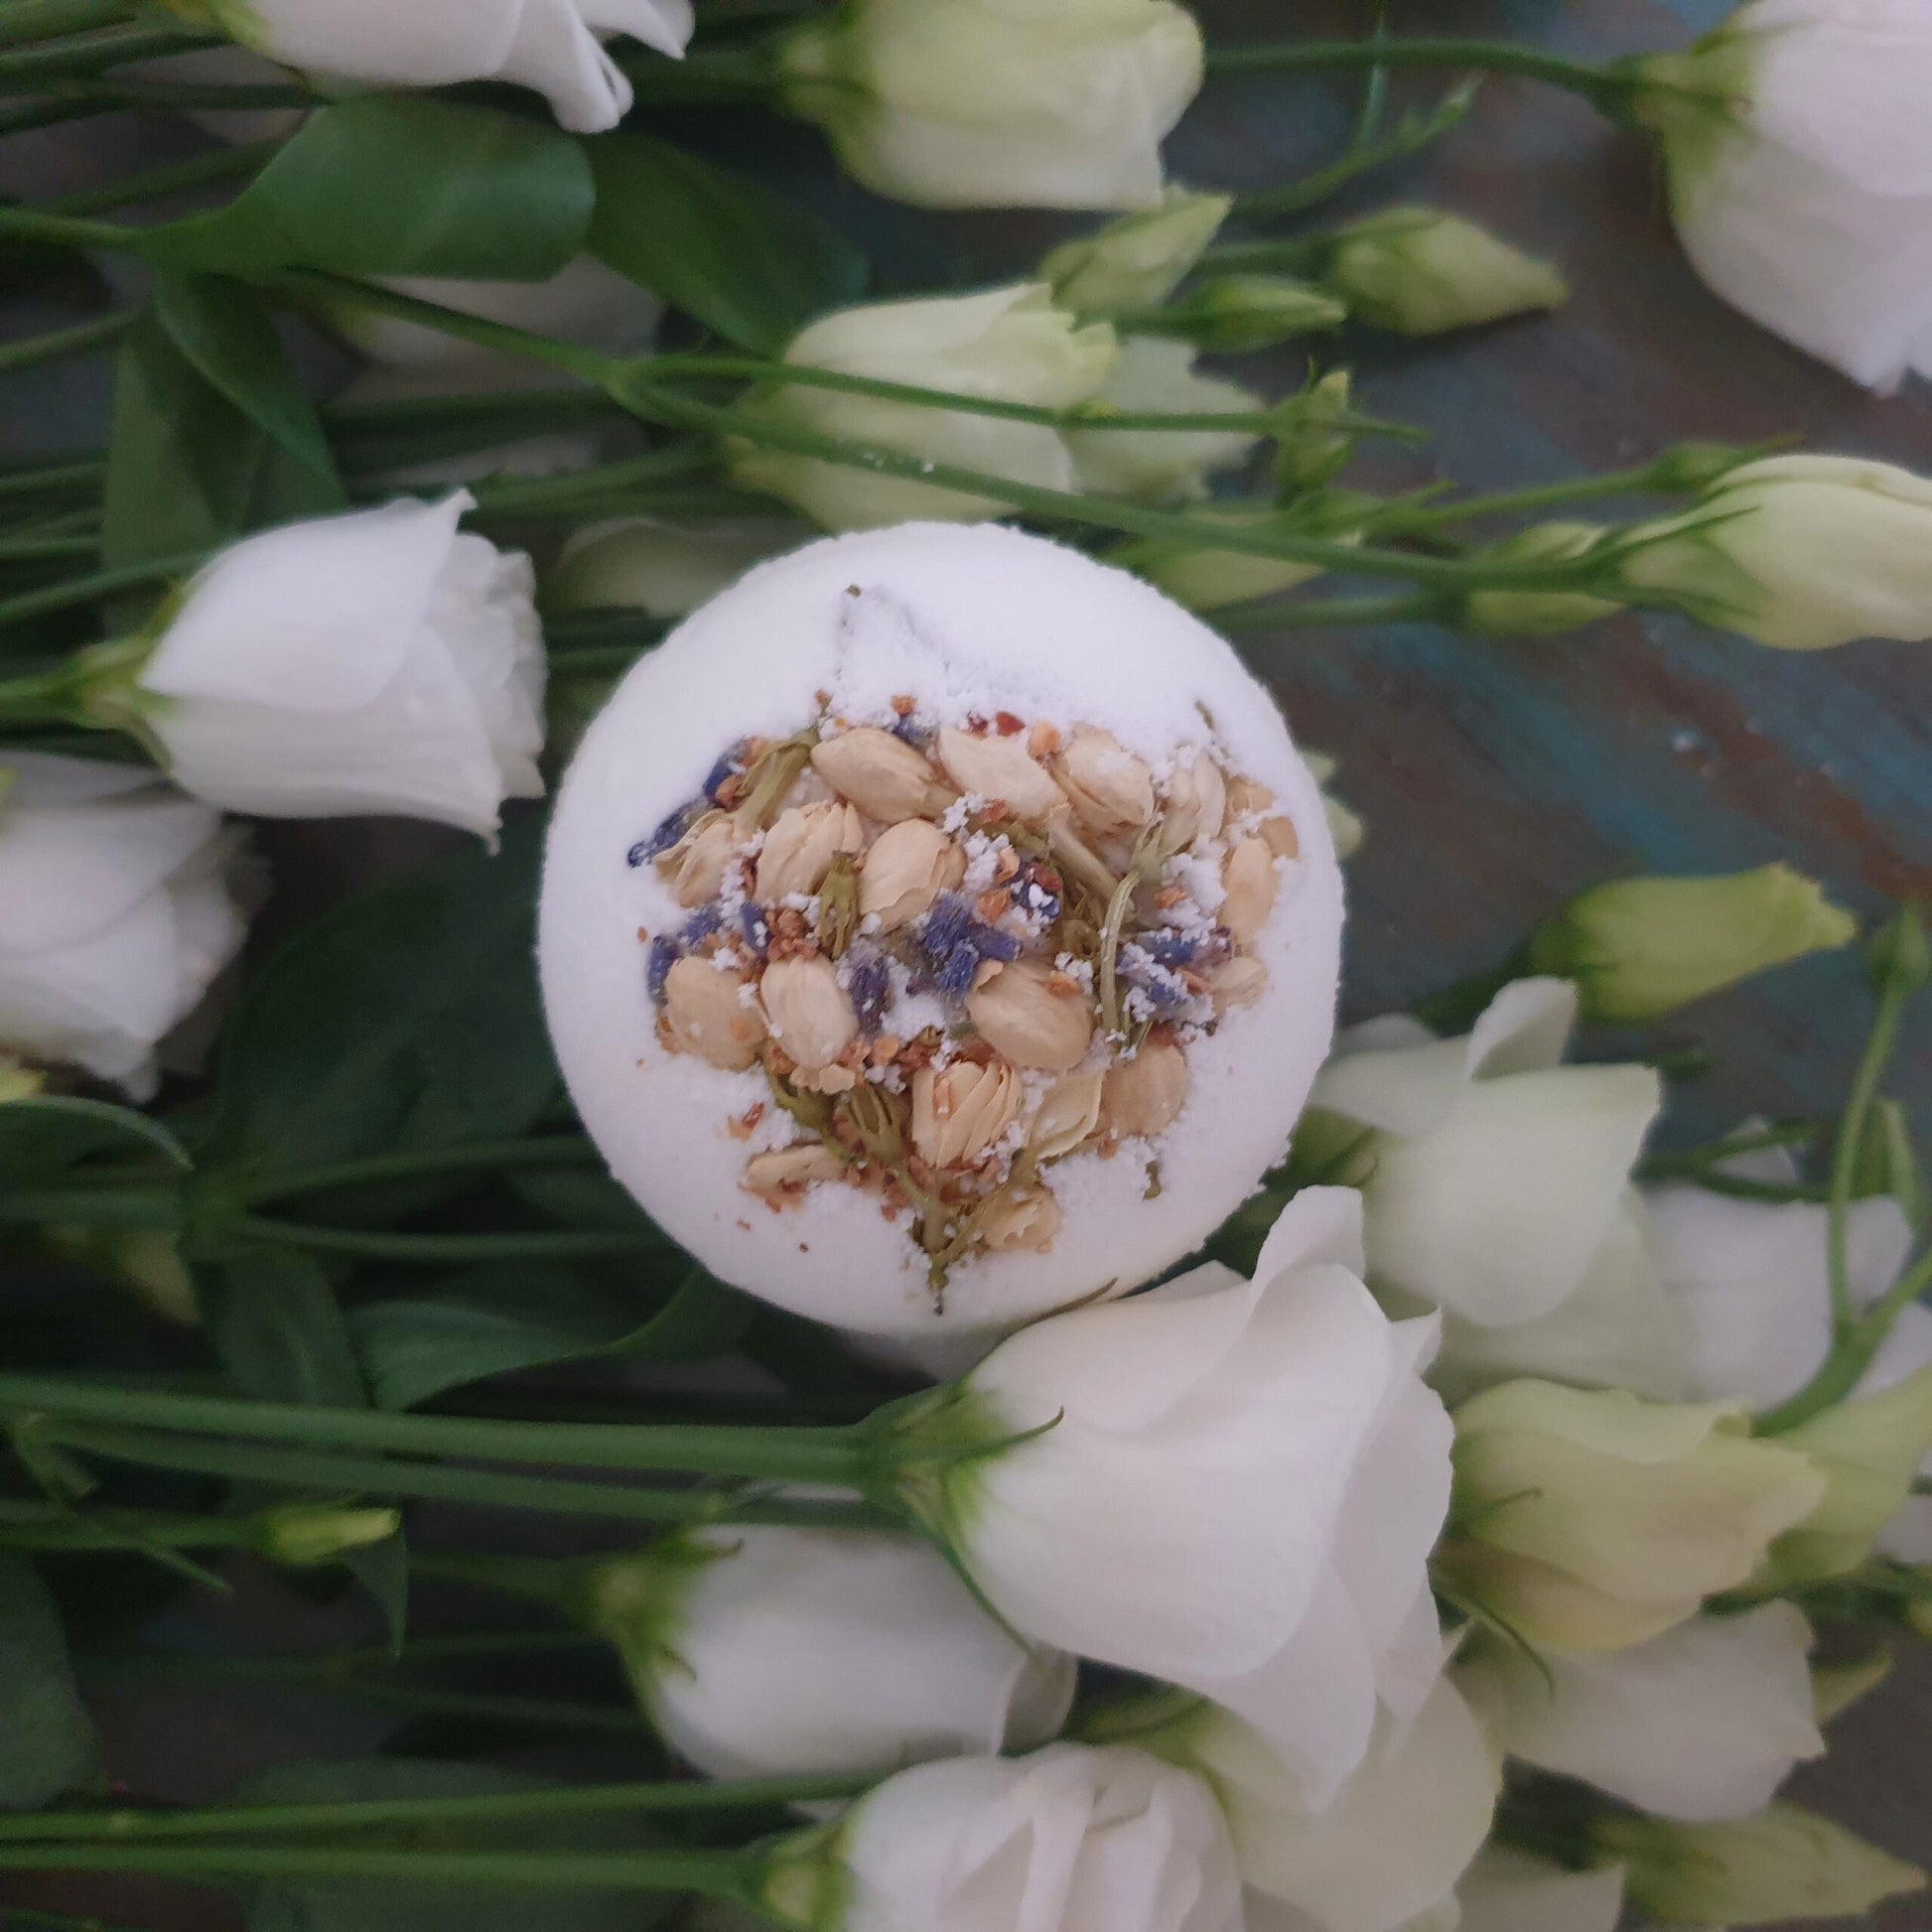 The Breathe Secret Bath Bomb displayed alongside beautiful white roses.